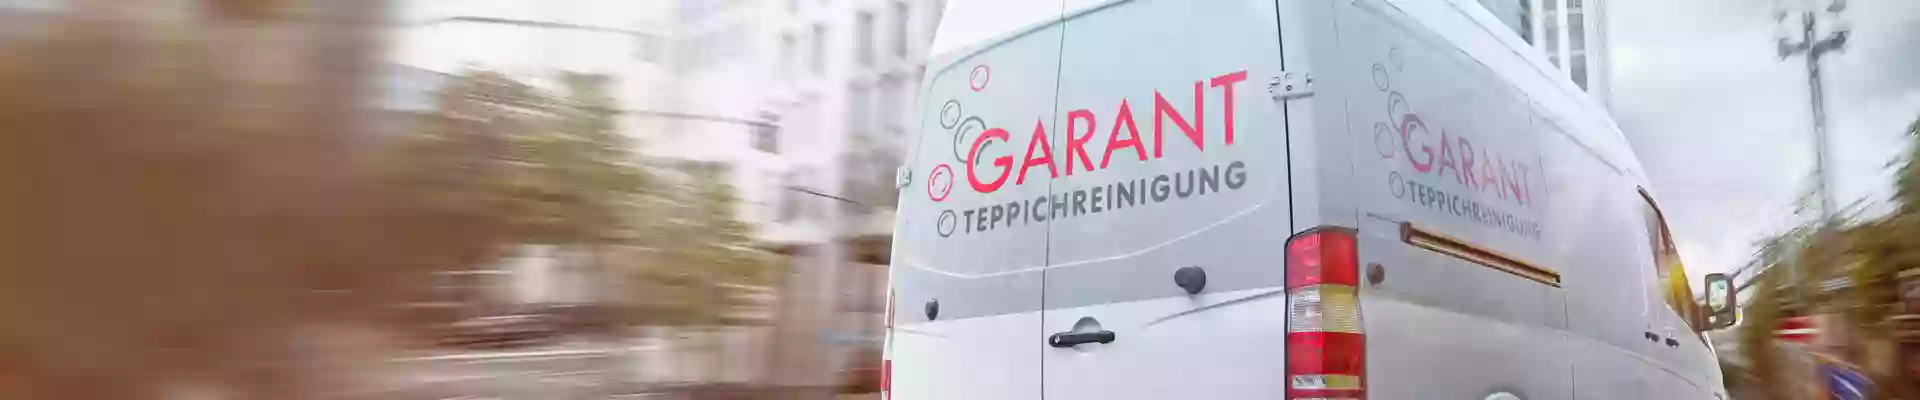 Garant Teppichreinigung GmbH